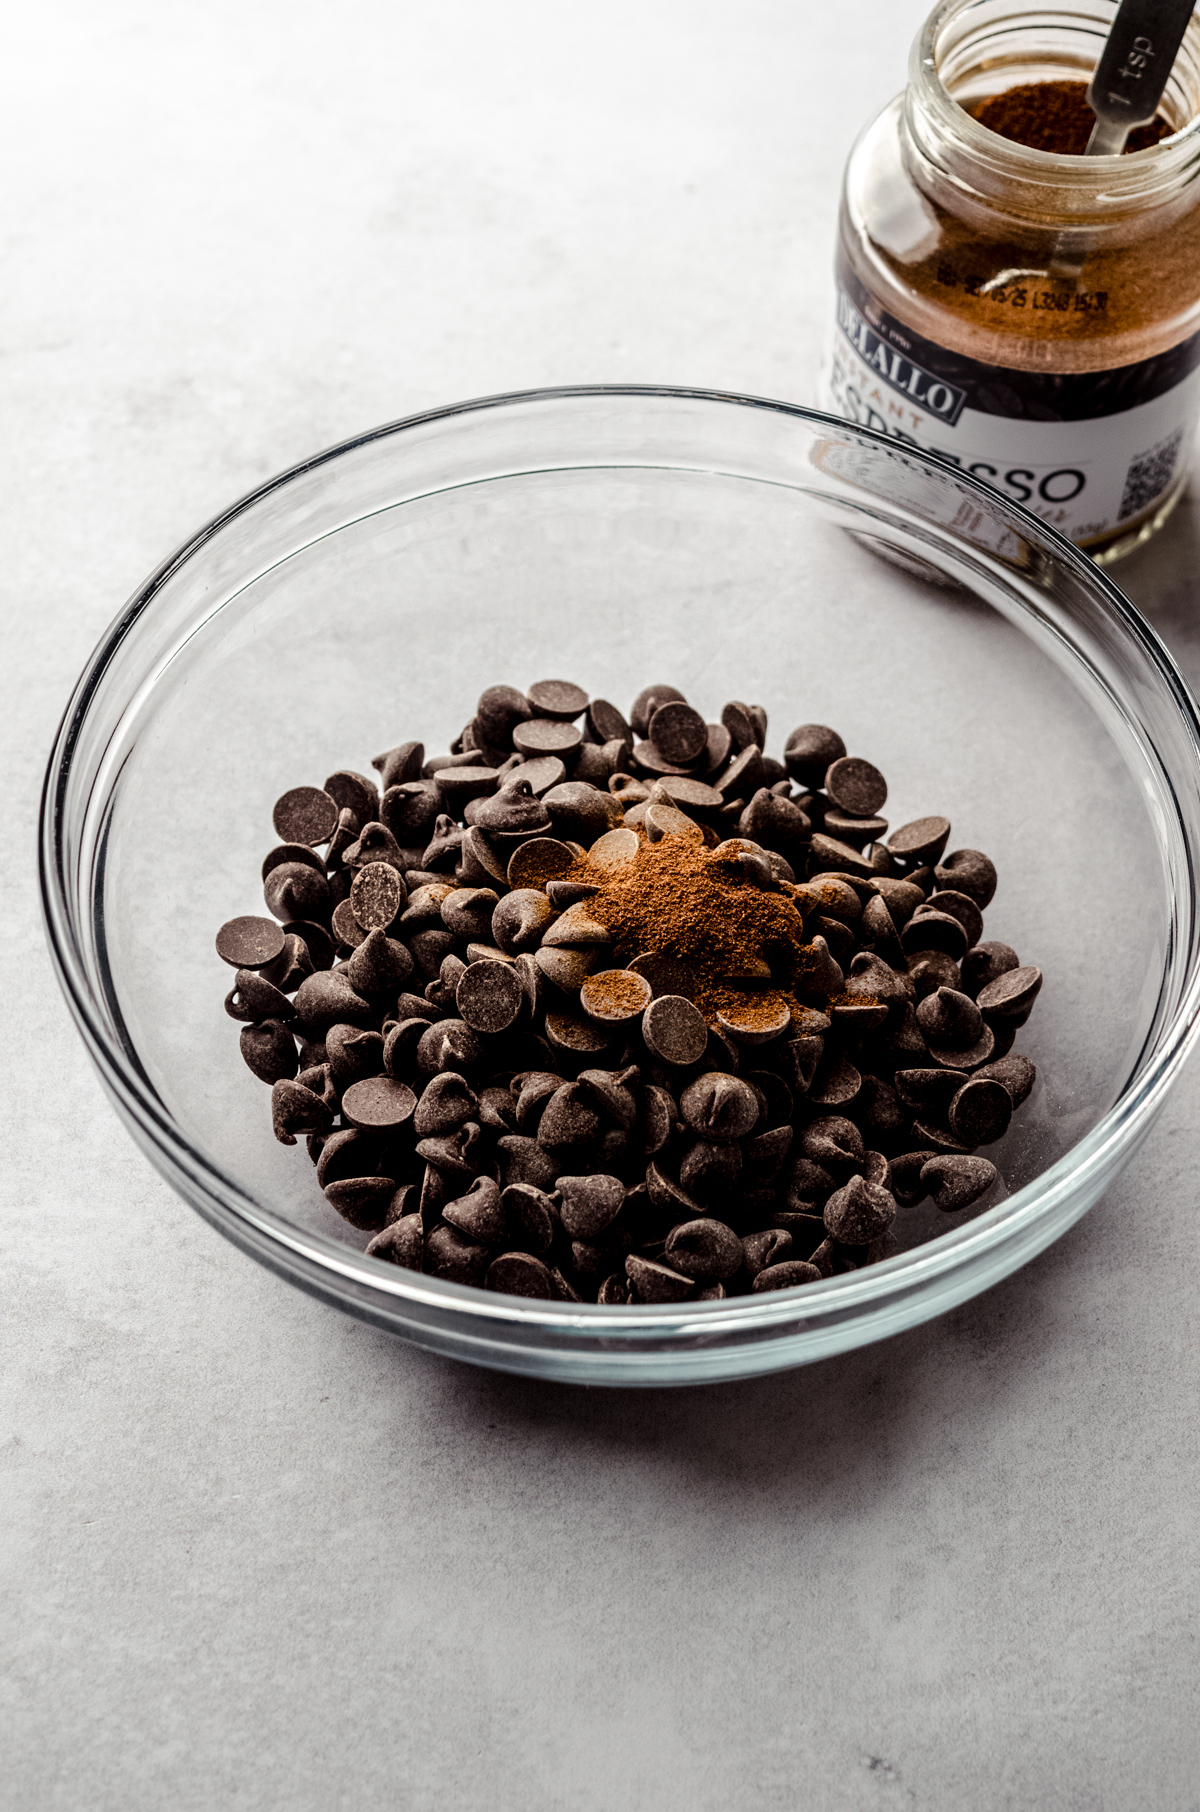 A bowl of chocolate chips and espresso powder to make chocolate espresso ganache.